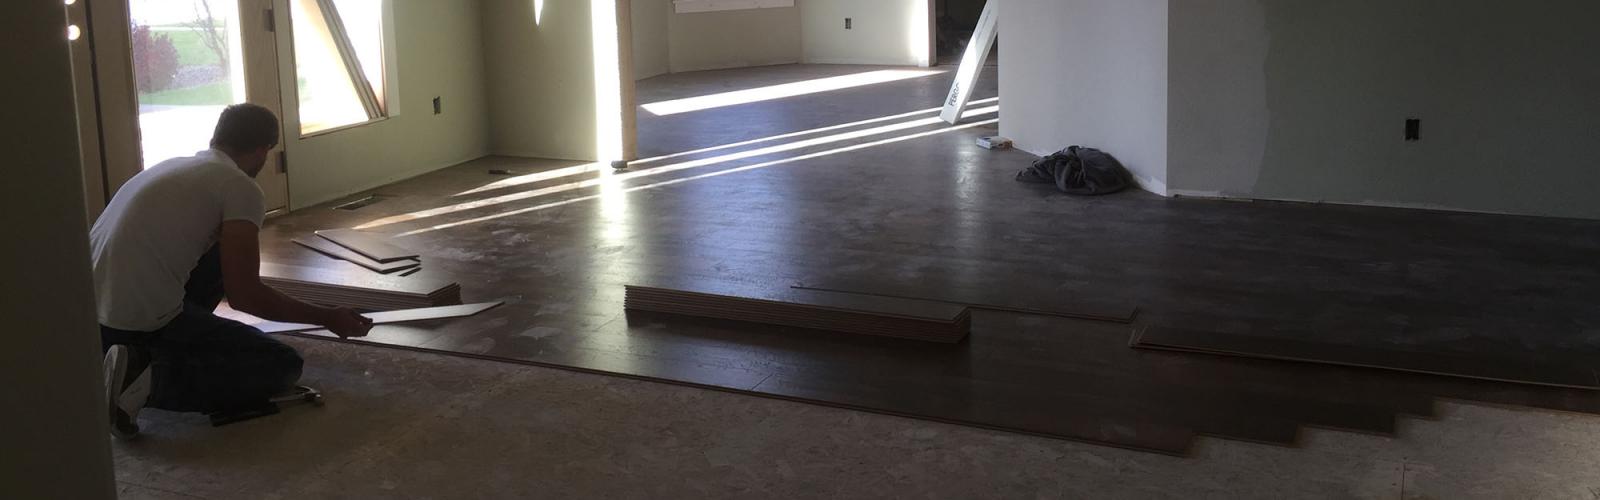 wood flooring install living room